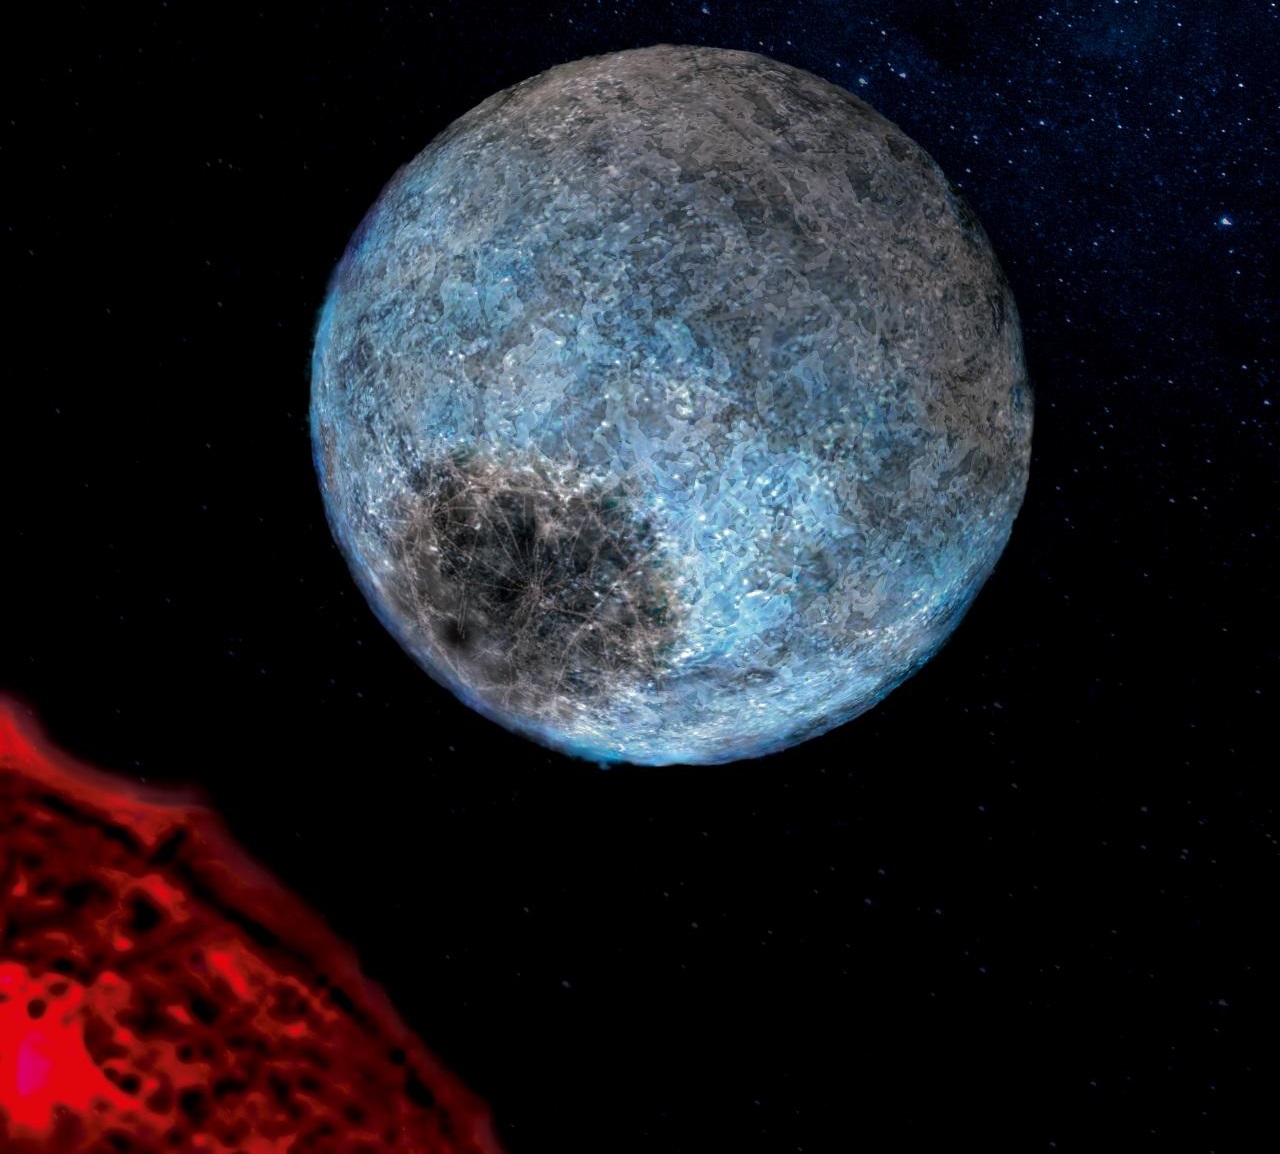 Hubble i Spitzer łączą siły, aby znaleźć parę egzoplanet w wodnym świecie